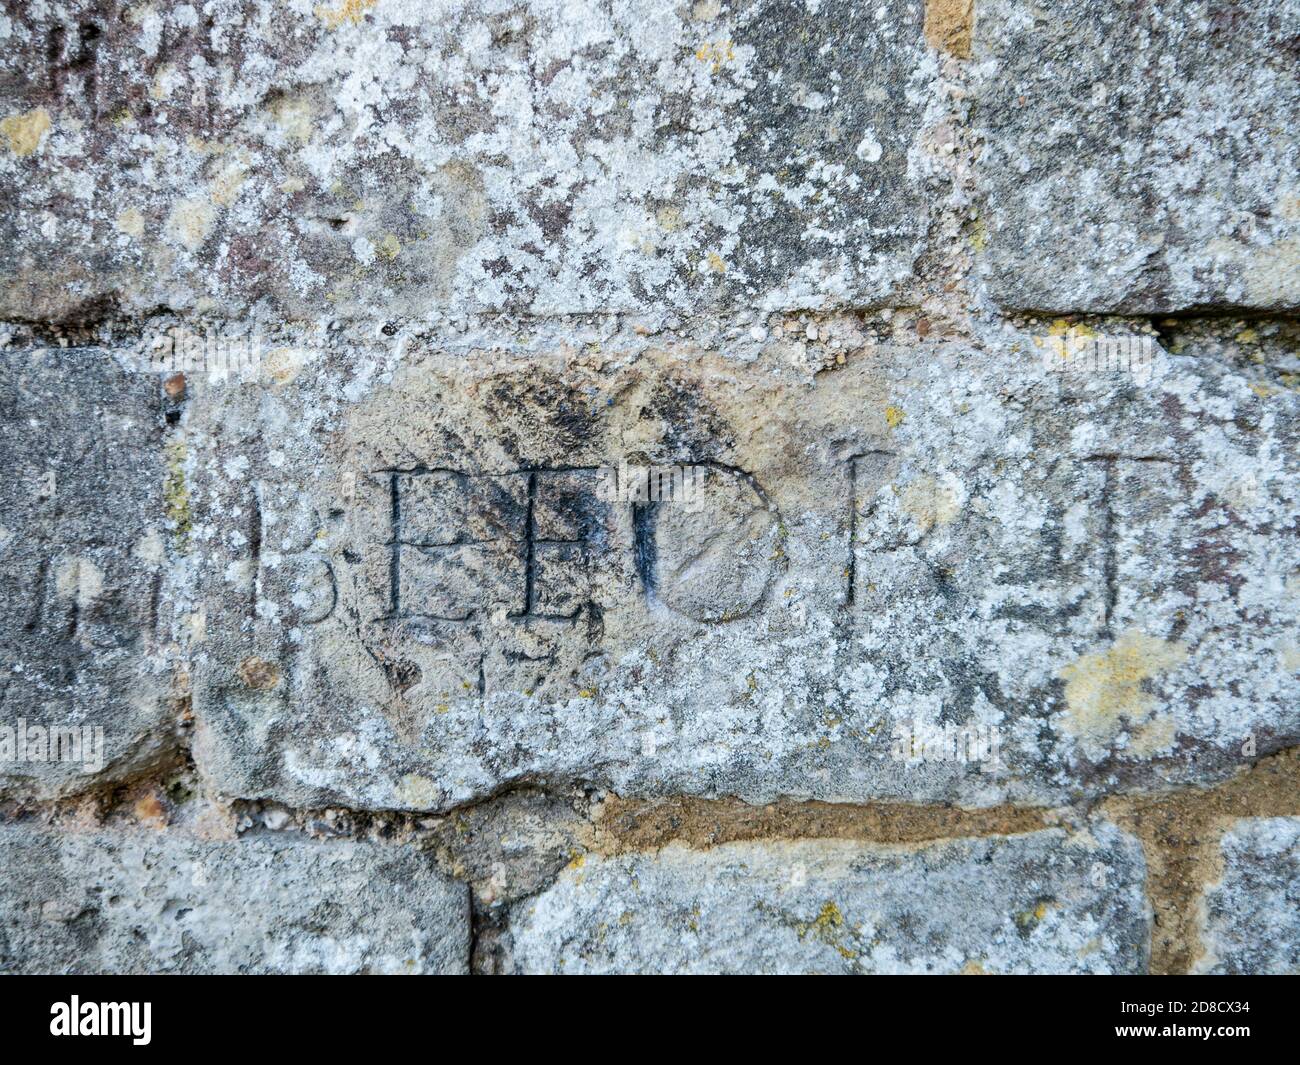 Graffiti hecho por prisioneros de guerra napoleónicos, inscrito en las paredes del castillo de Portchester, Inglaterra. Foto de stock